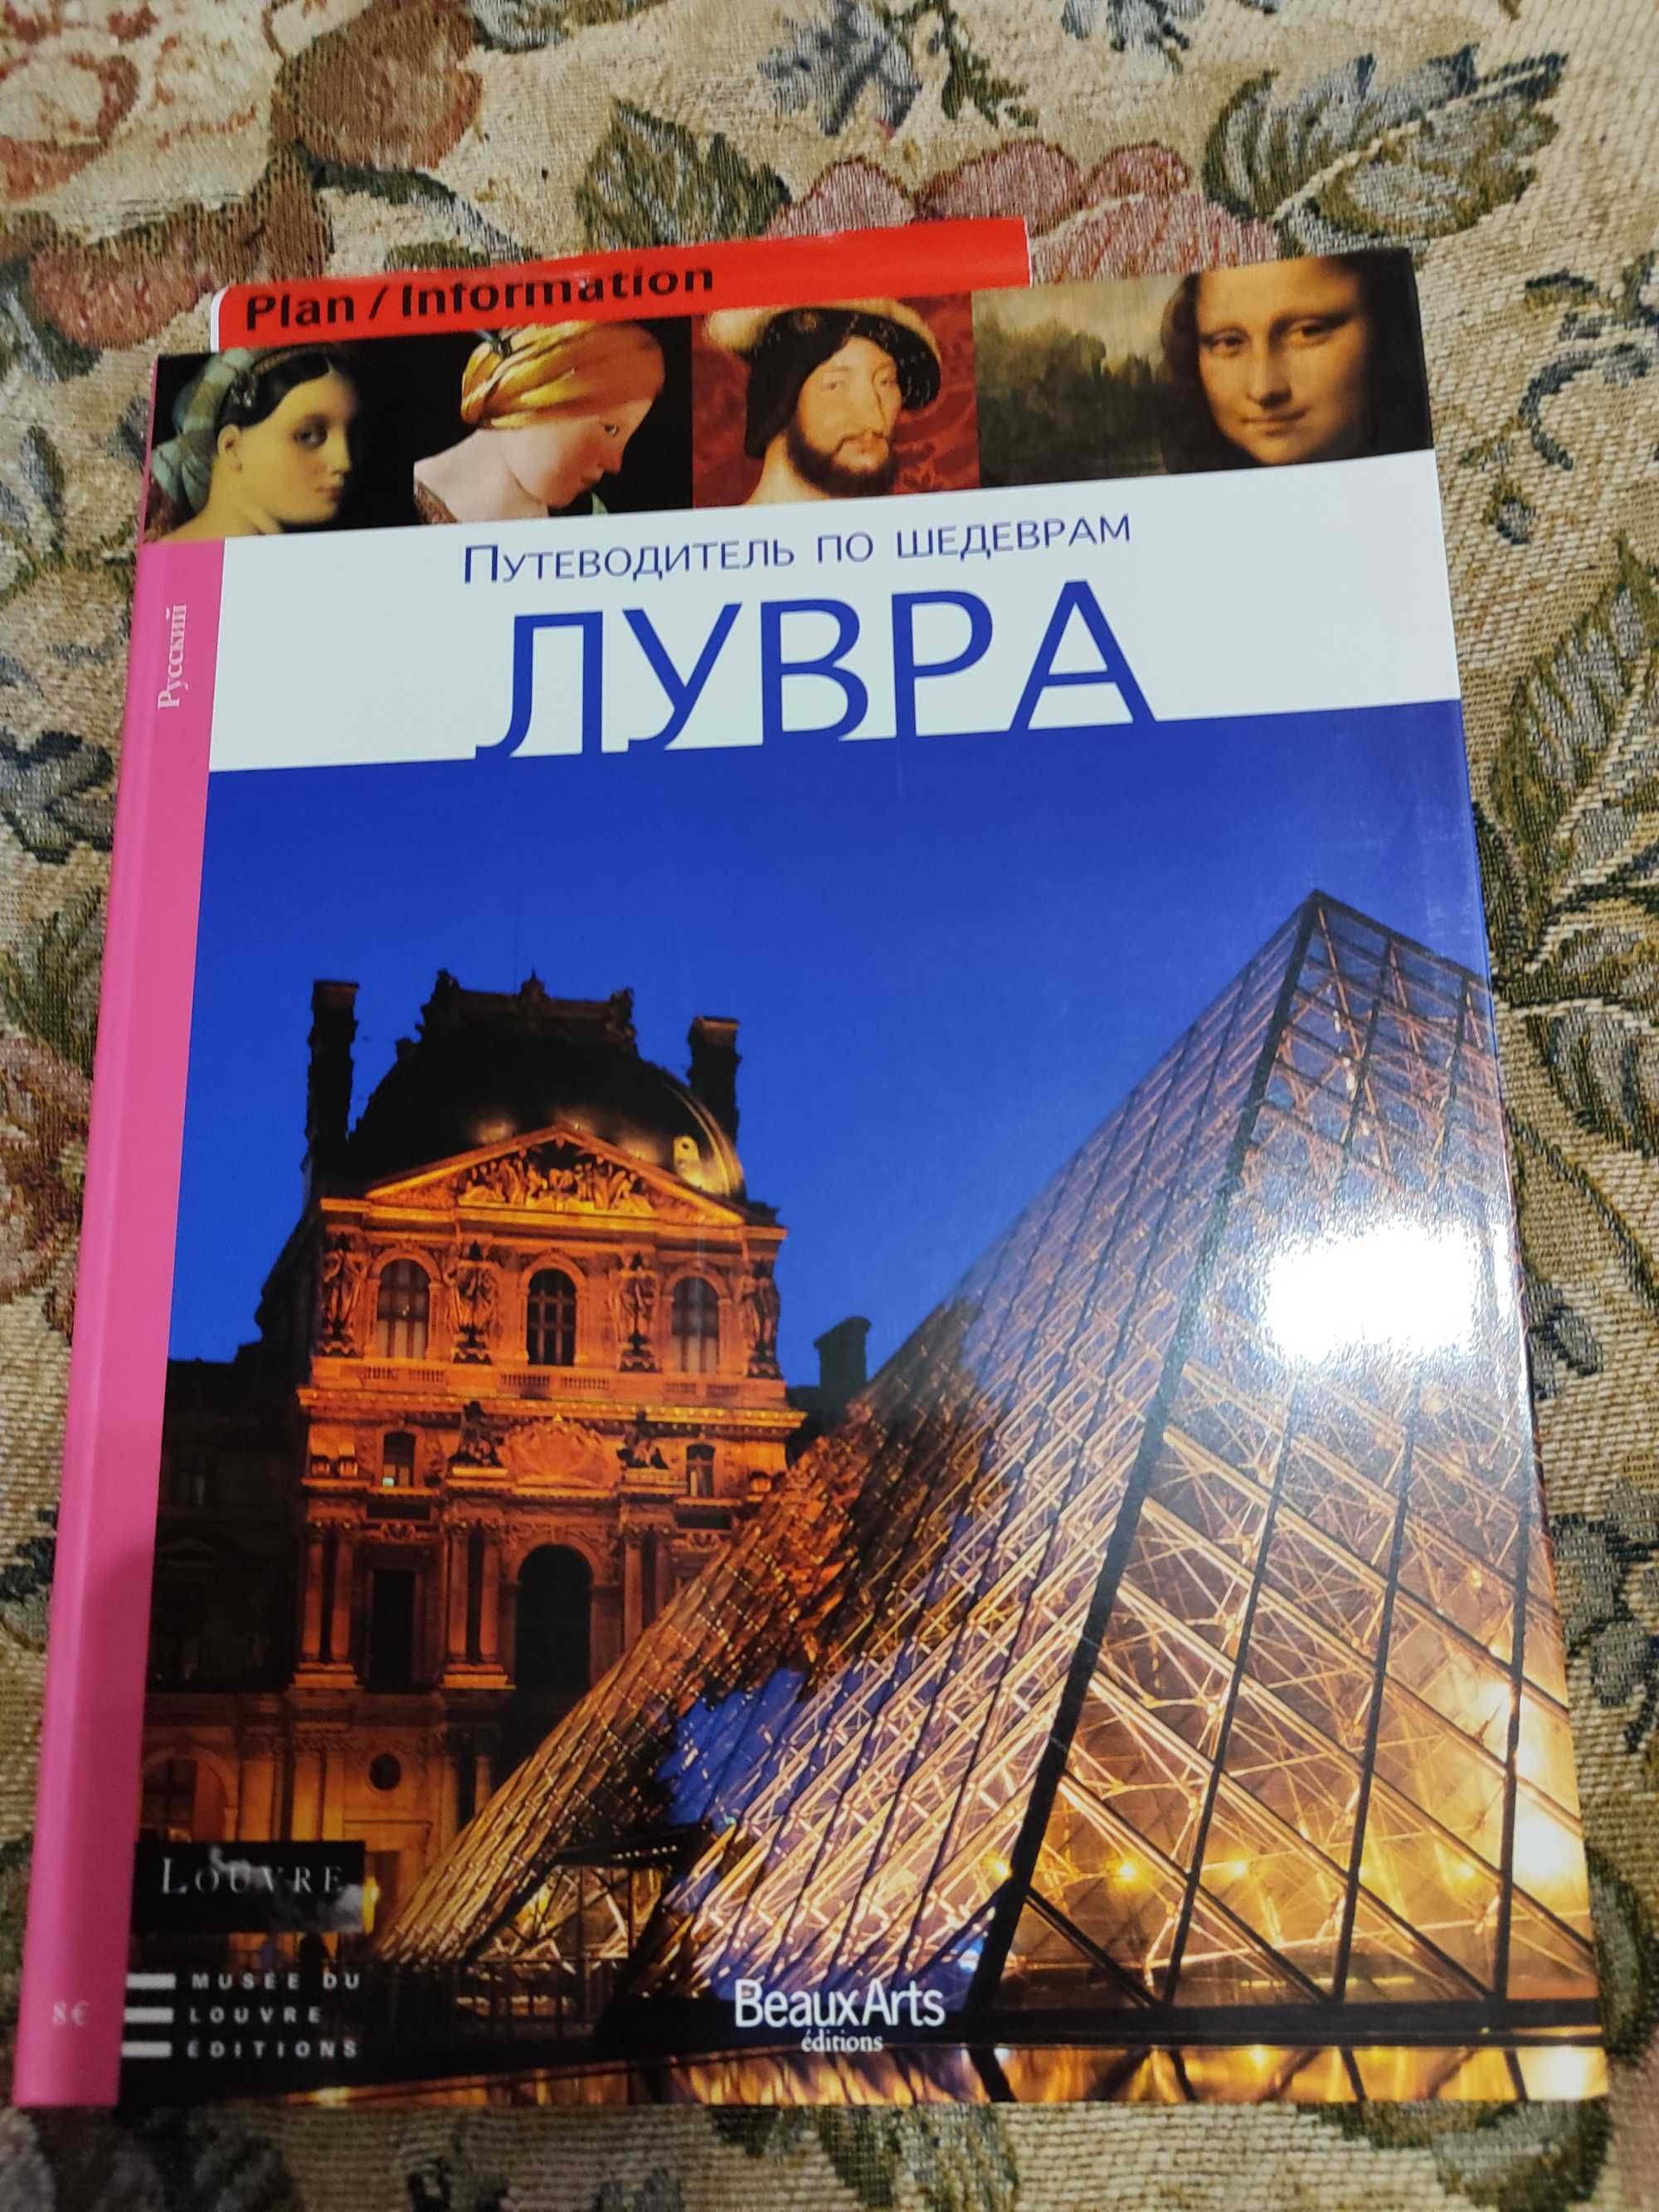 Книга "Всё о музеях мира"